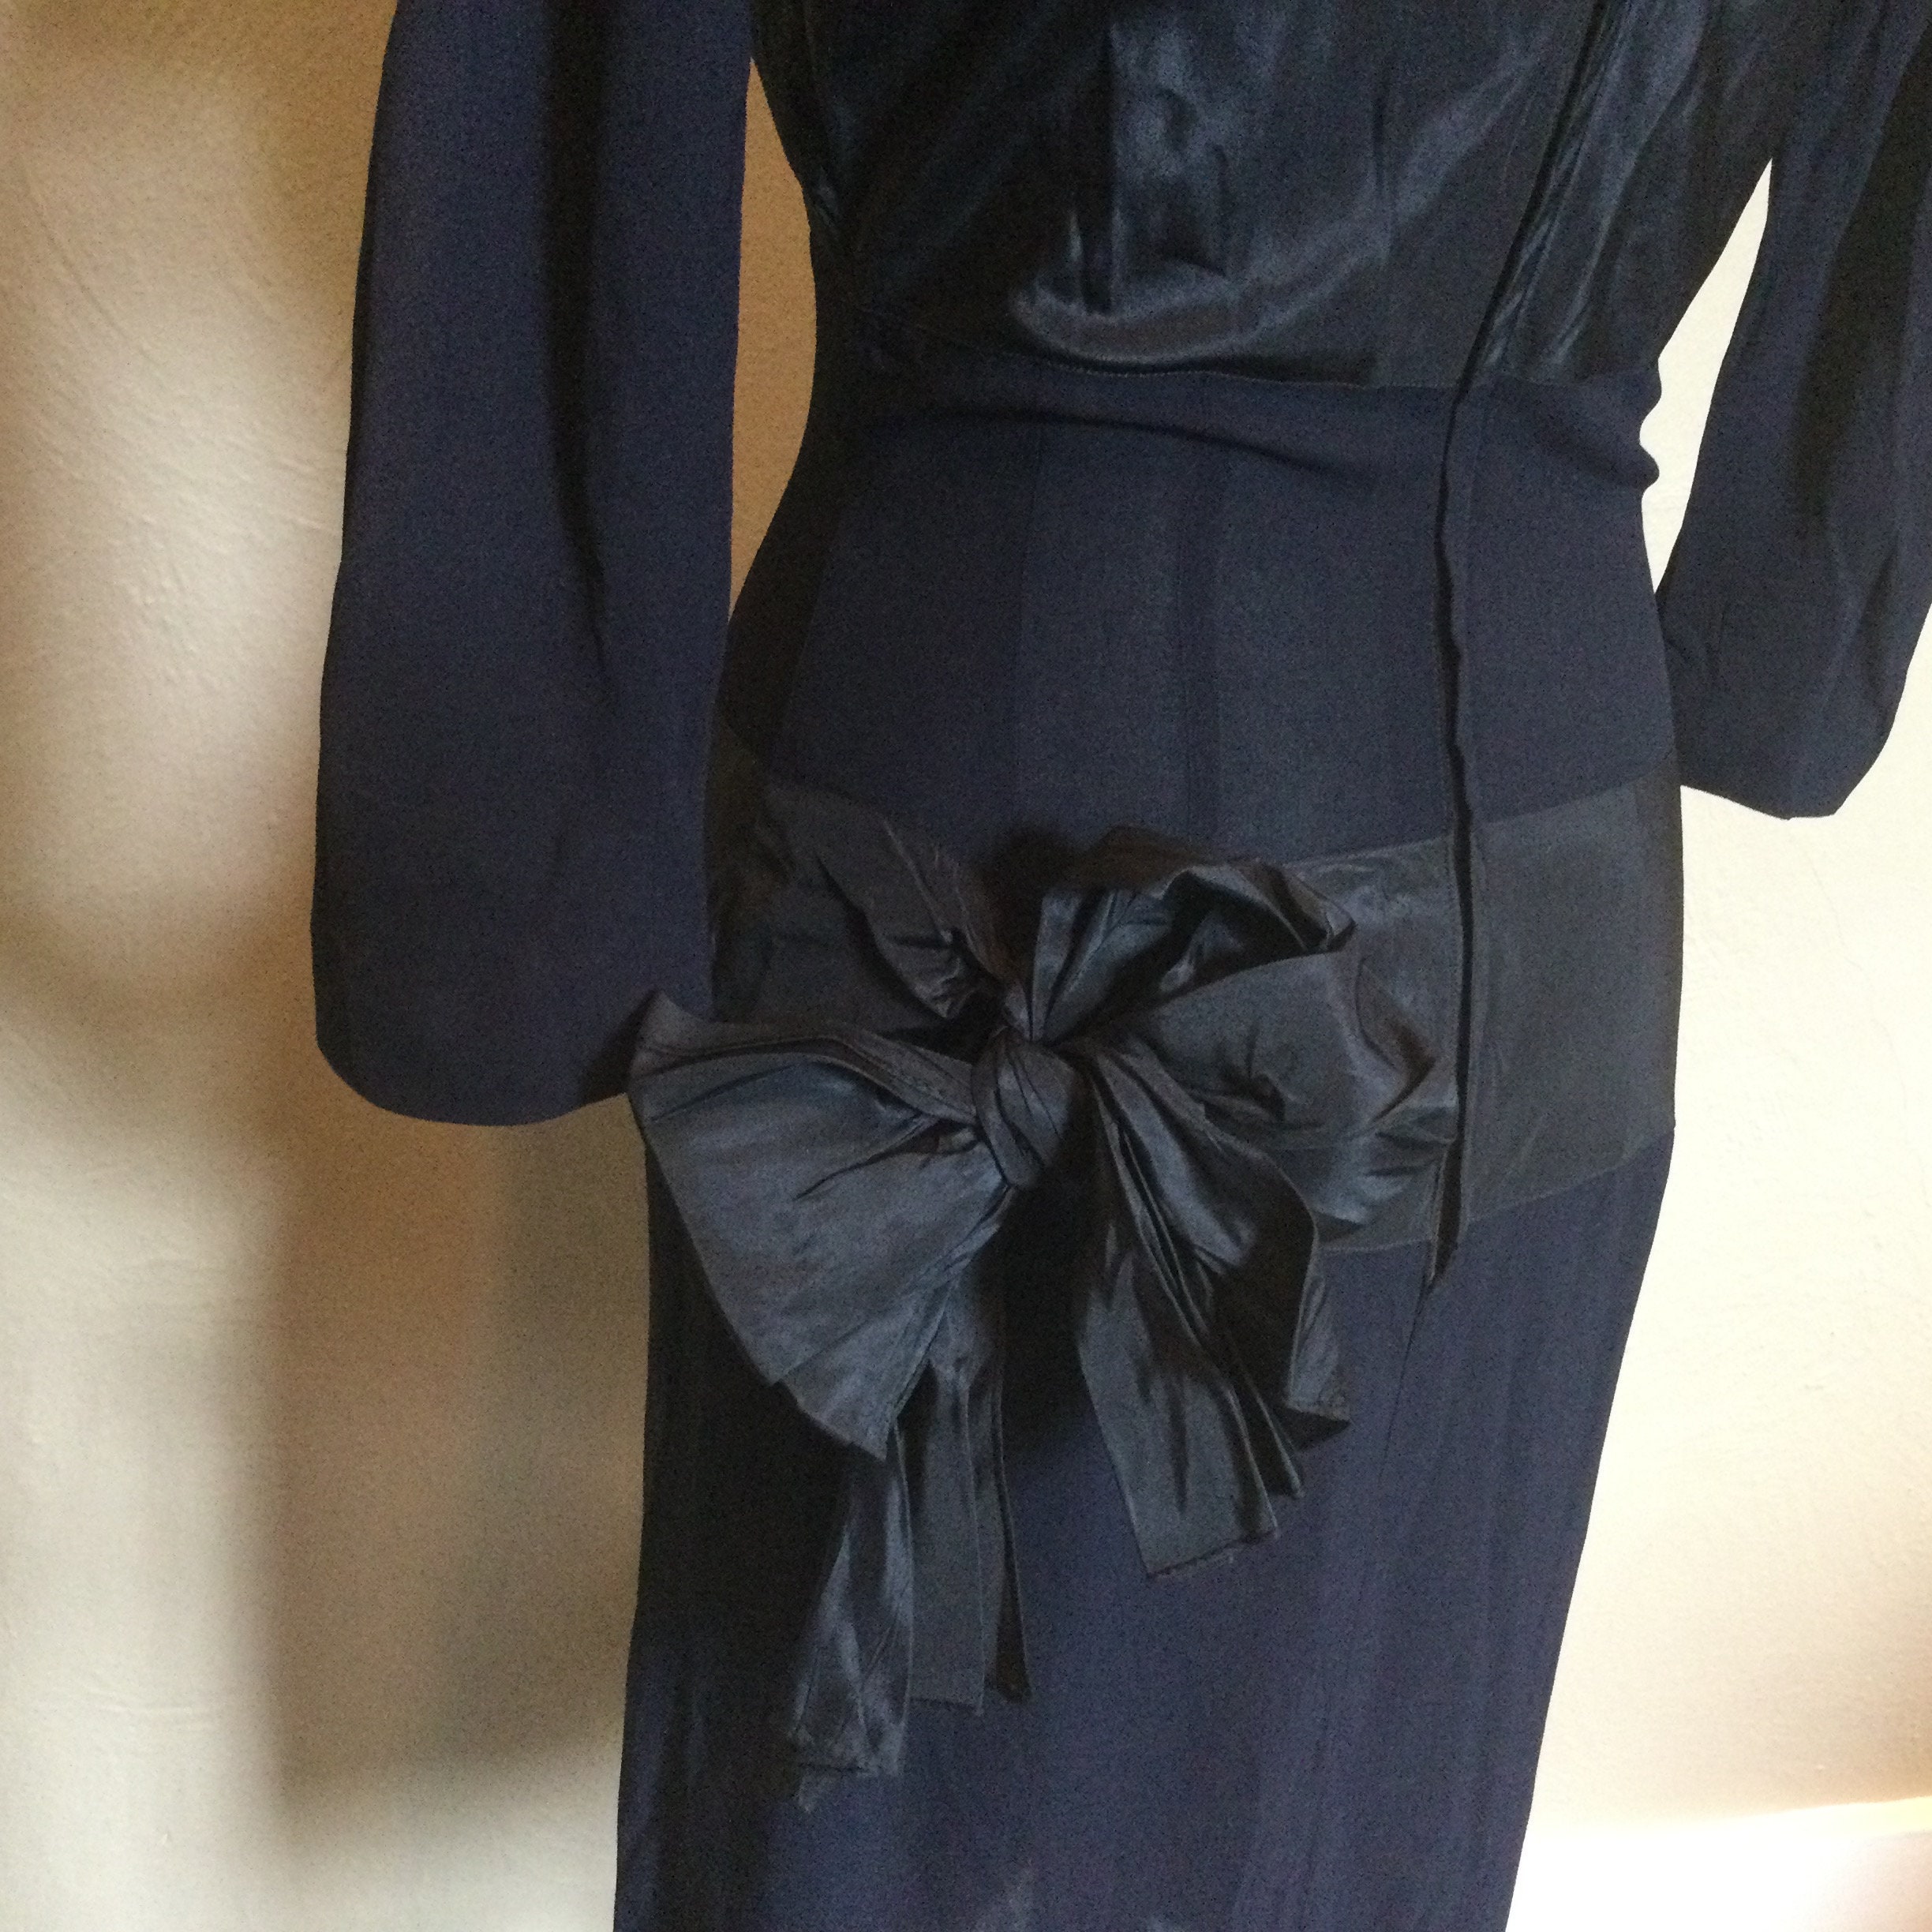 Vintage 1950s Black Cocktail Dress by Designer Paul Parnes  Sz Small  Bow Accents  50s Paul Parnes Cocktail Dress  Satin & Crepe Striped